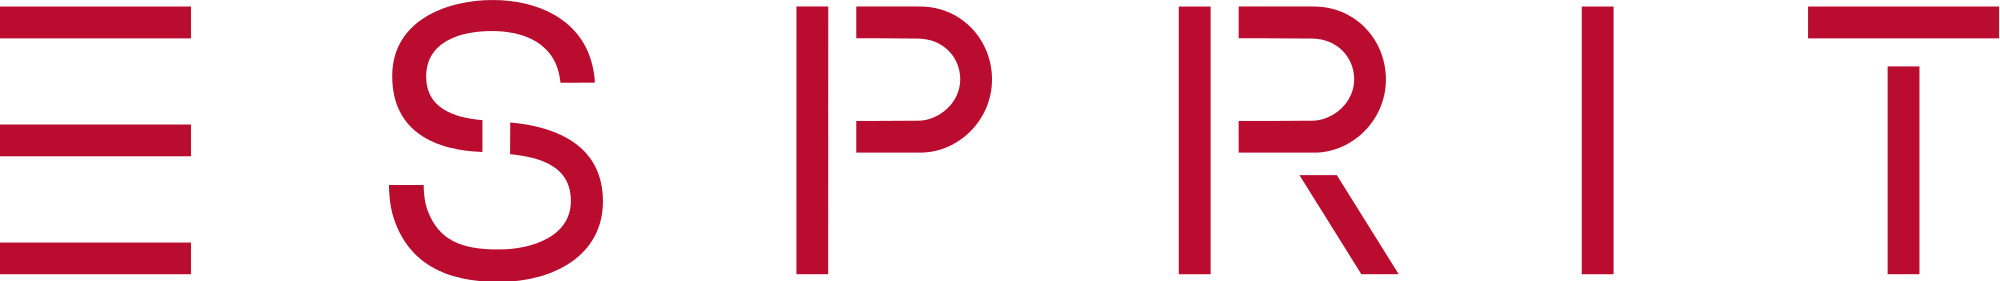 Esprit Red Logo icons